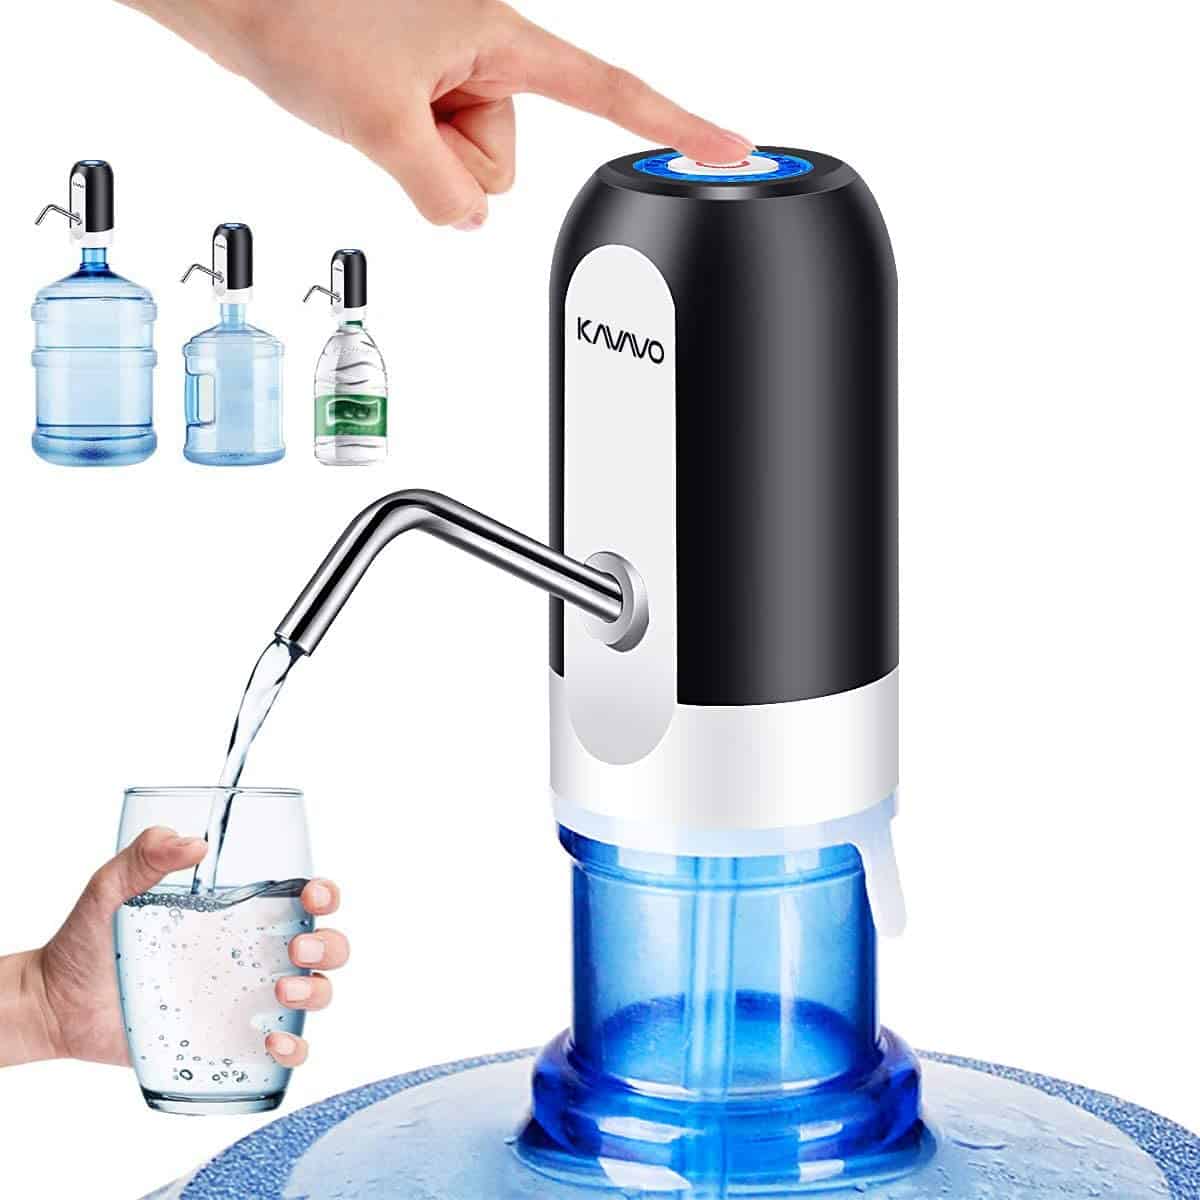 Quels sont les avantages de la machine à eau Kangen ? - Solutions